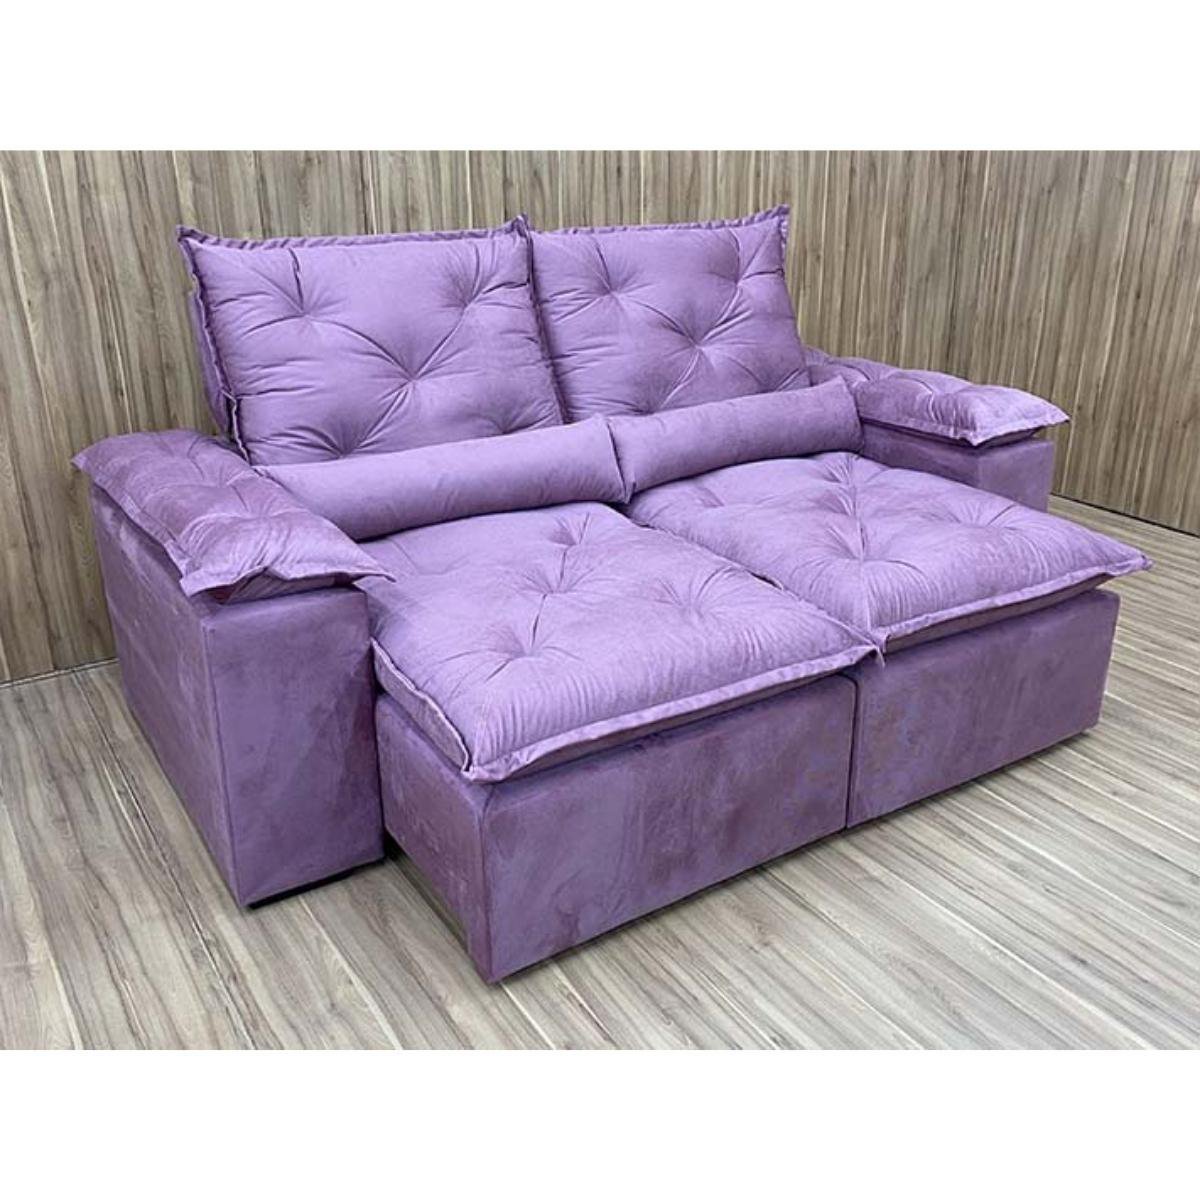 Sofa Reclinavel Retratil Design Elegante Athena 2,30m Veludo Cor:Violeta